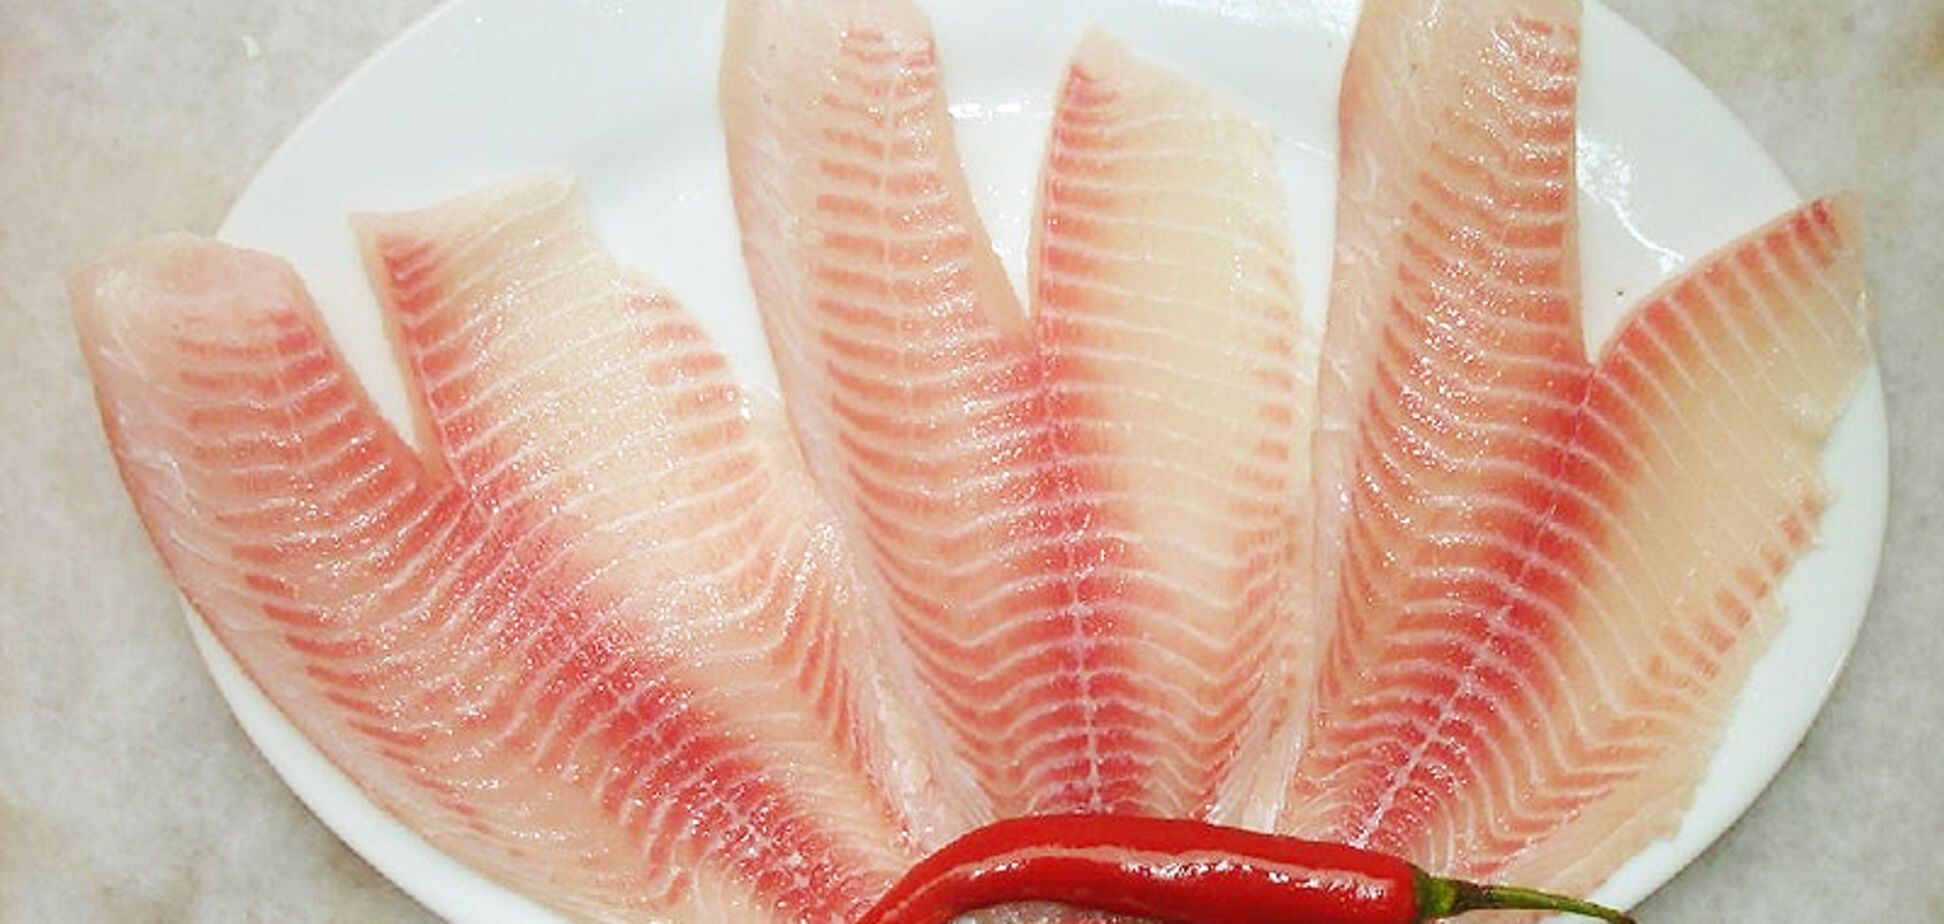 Срочно отказаться: медики назвали рыбу, которую нельзя есть